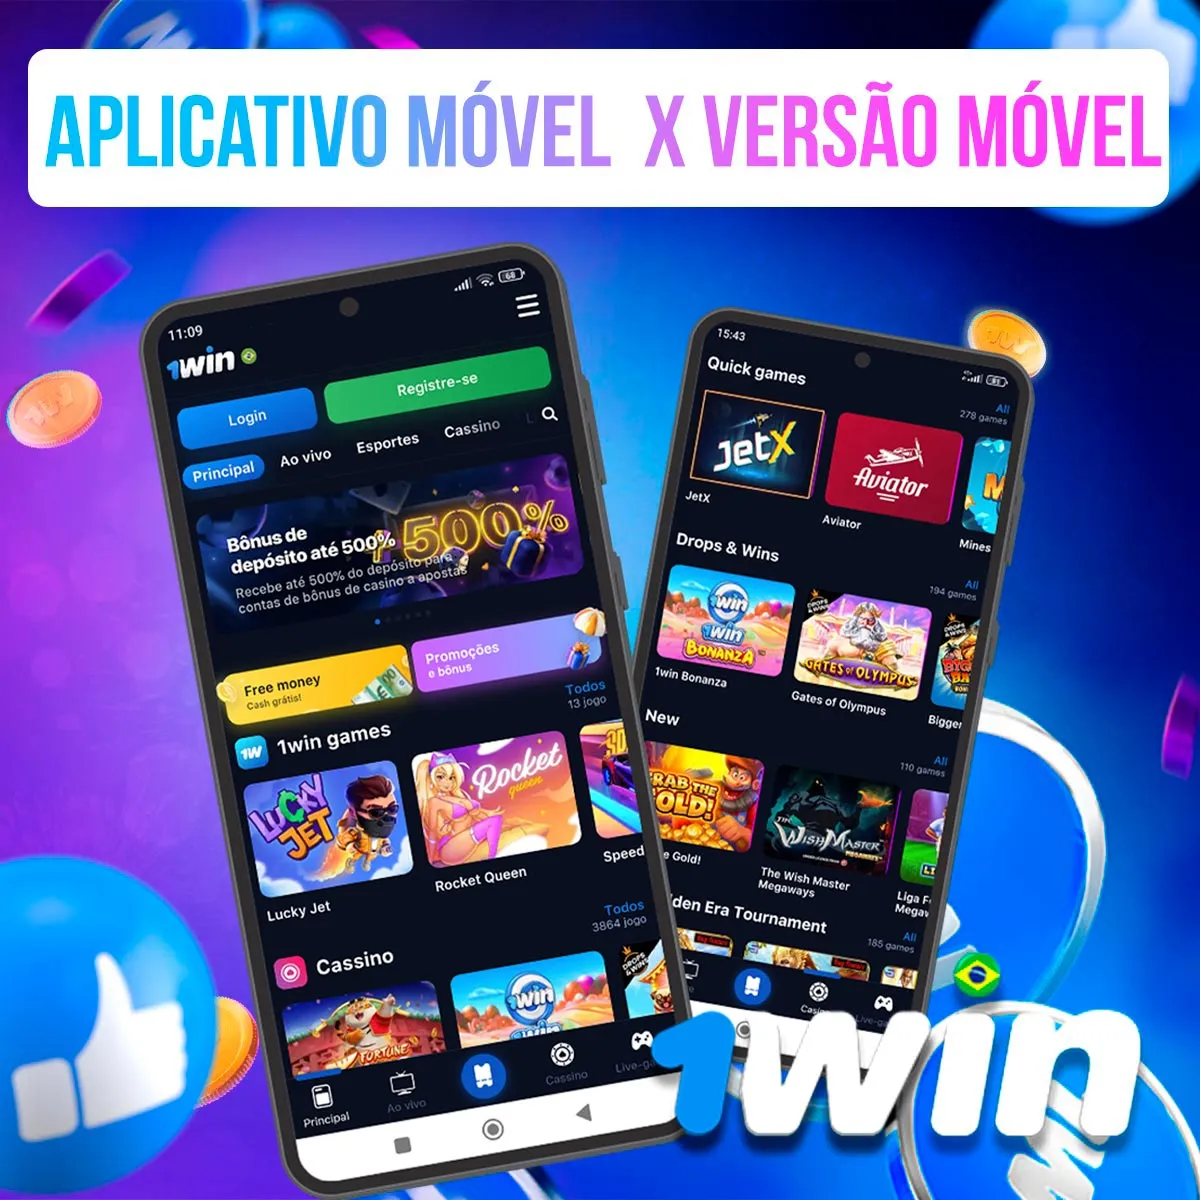 Análise comparativa do aplicativo móvel e da versão móvel da 1win no Brasil